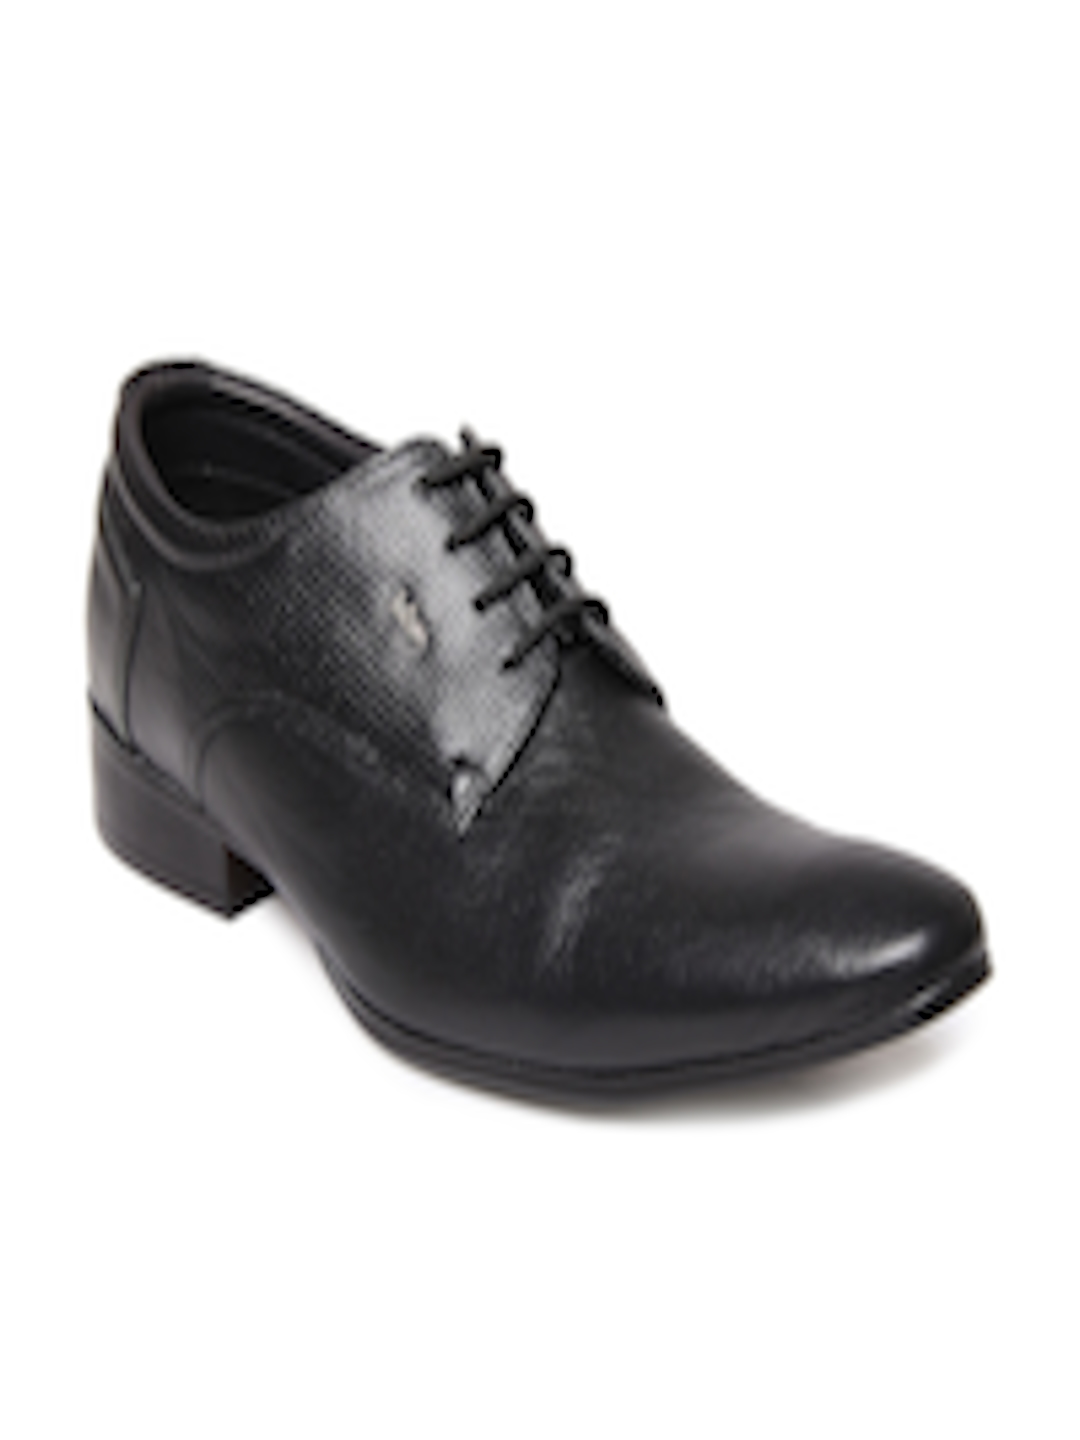 Buy Lee Cooper Men Black Leather Semi Formal Shoes - Formal Shoes for ...